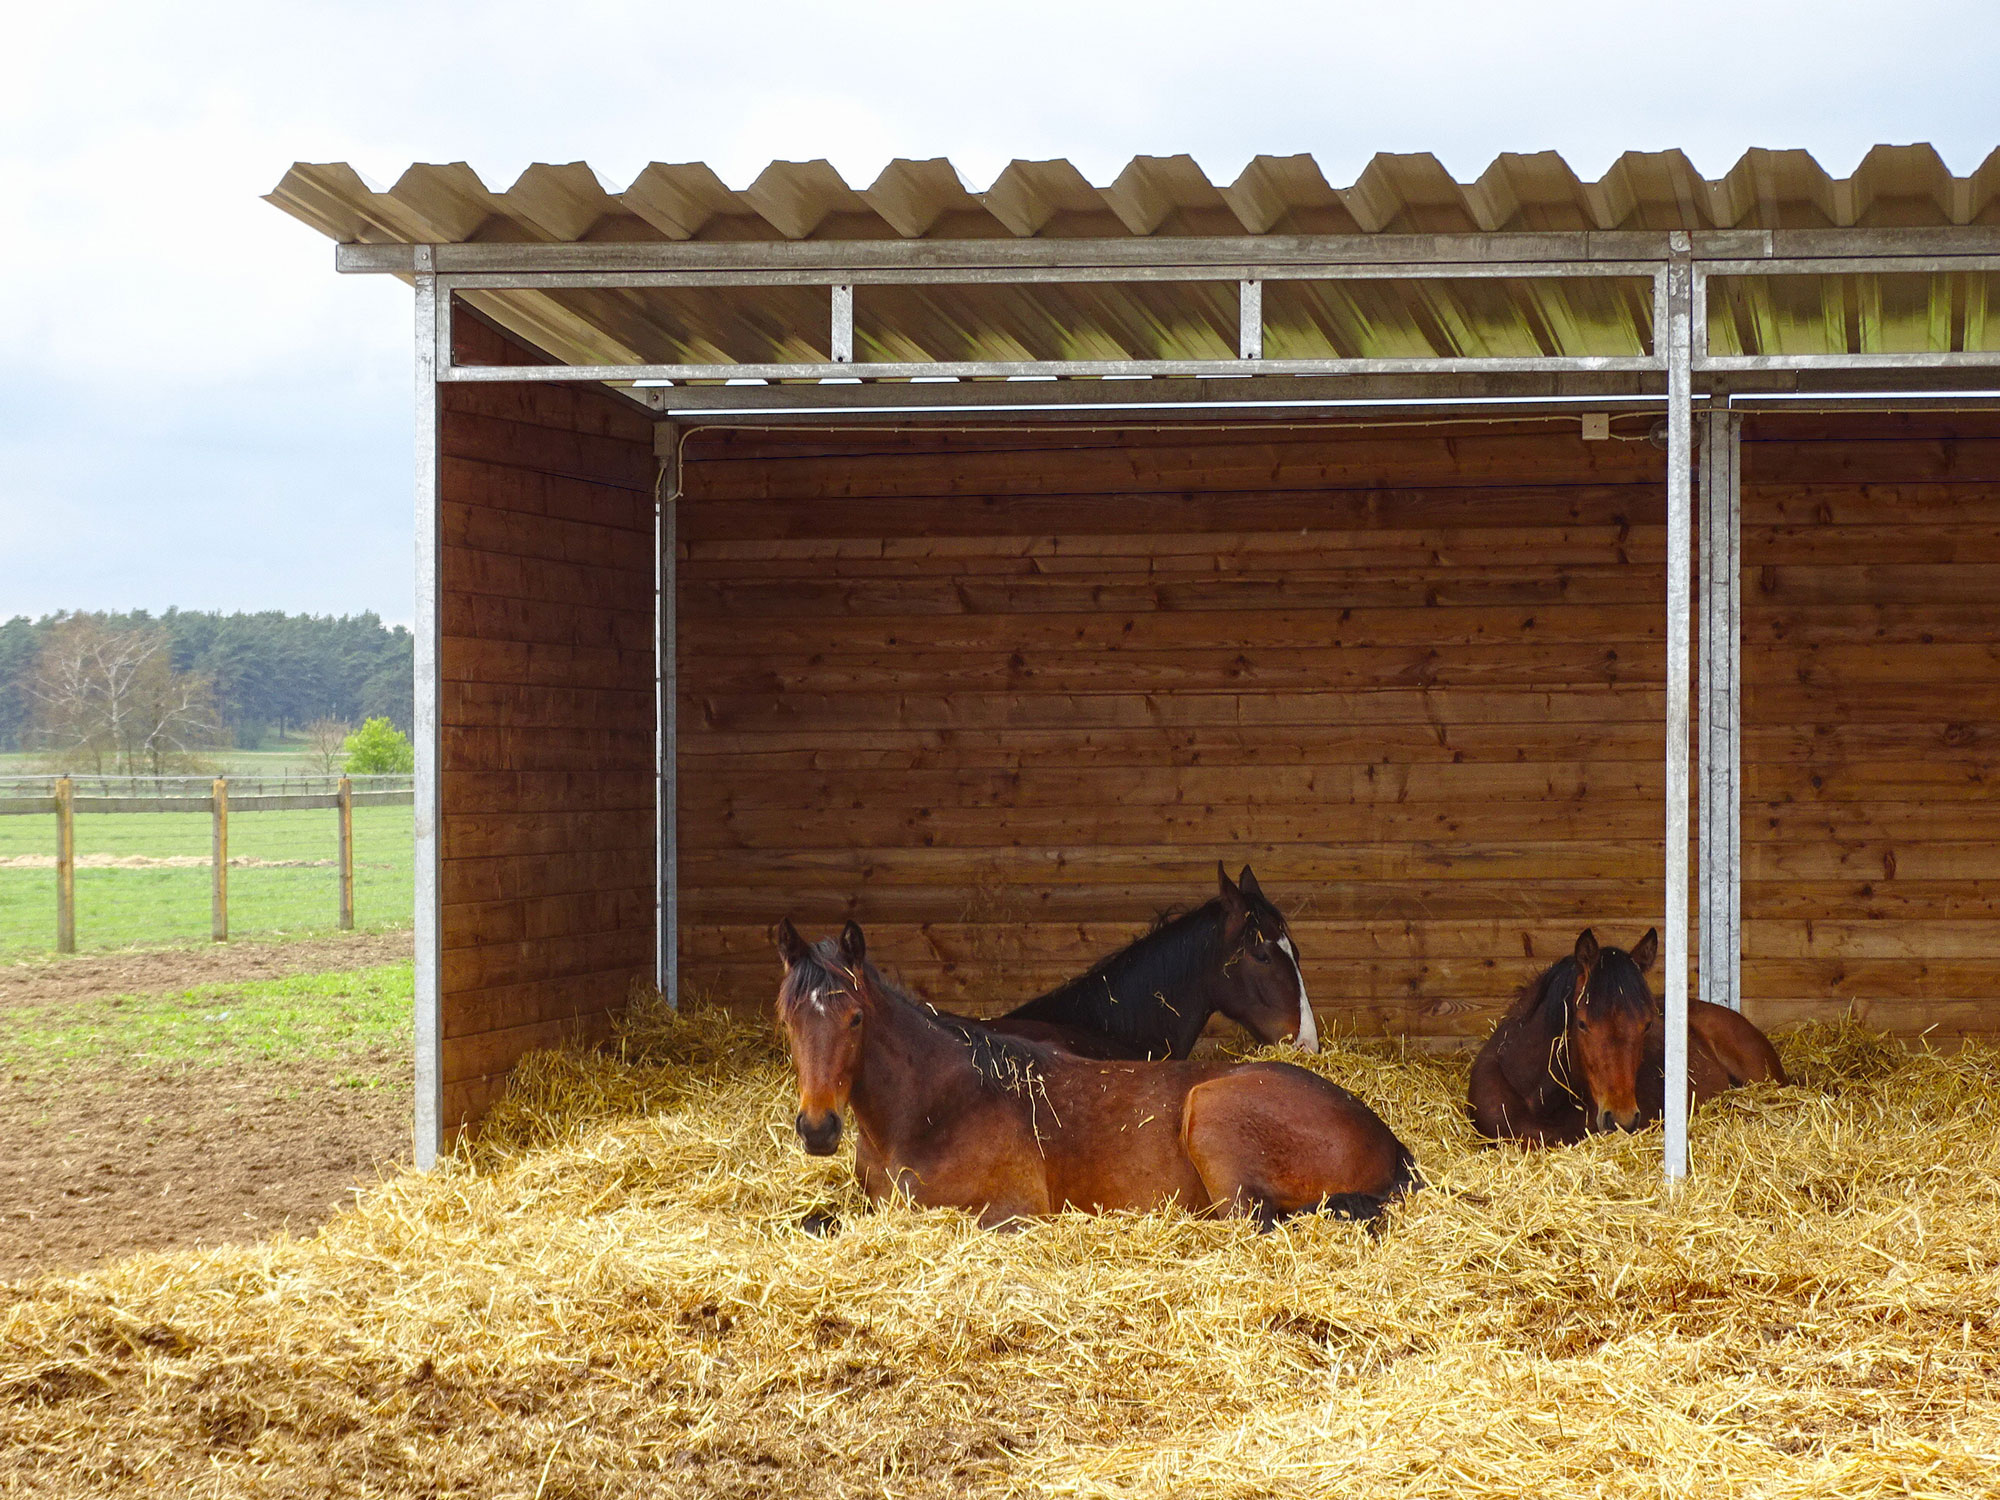 Drie bruine paarden liggen op een bed van stro in een schuilstal.